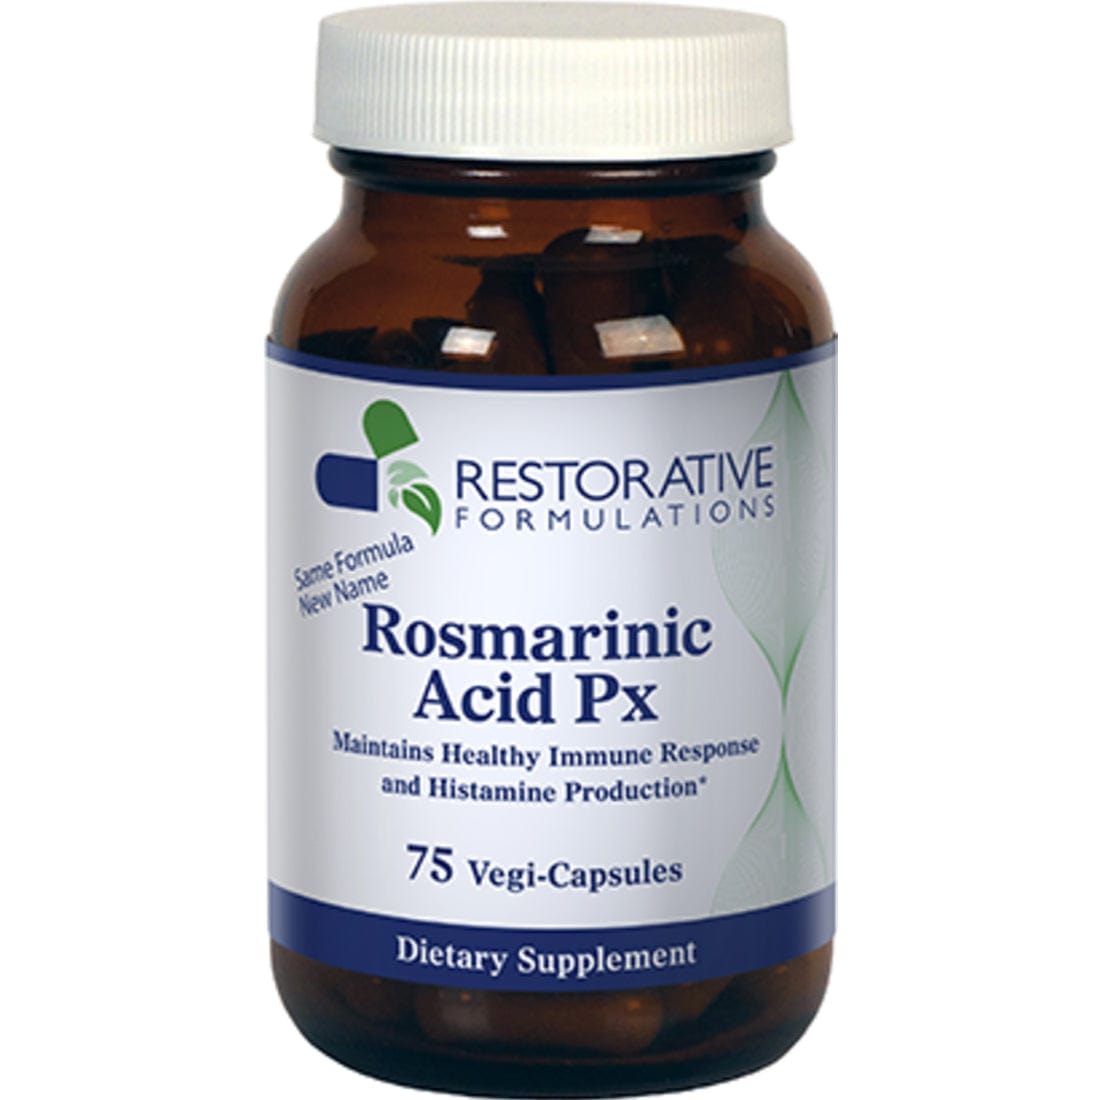 Restorative Formulations Rosmarinic Acid Px, 75 Vegi-Capsules